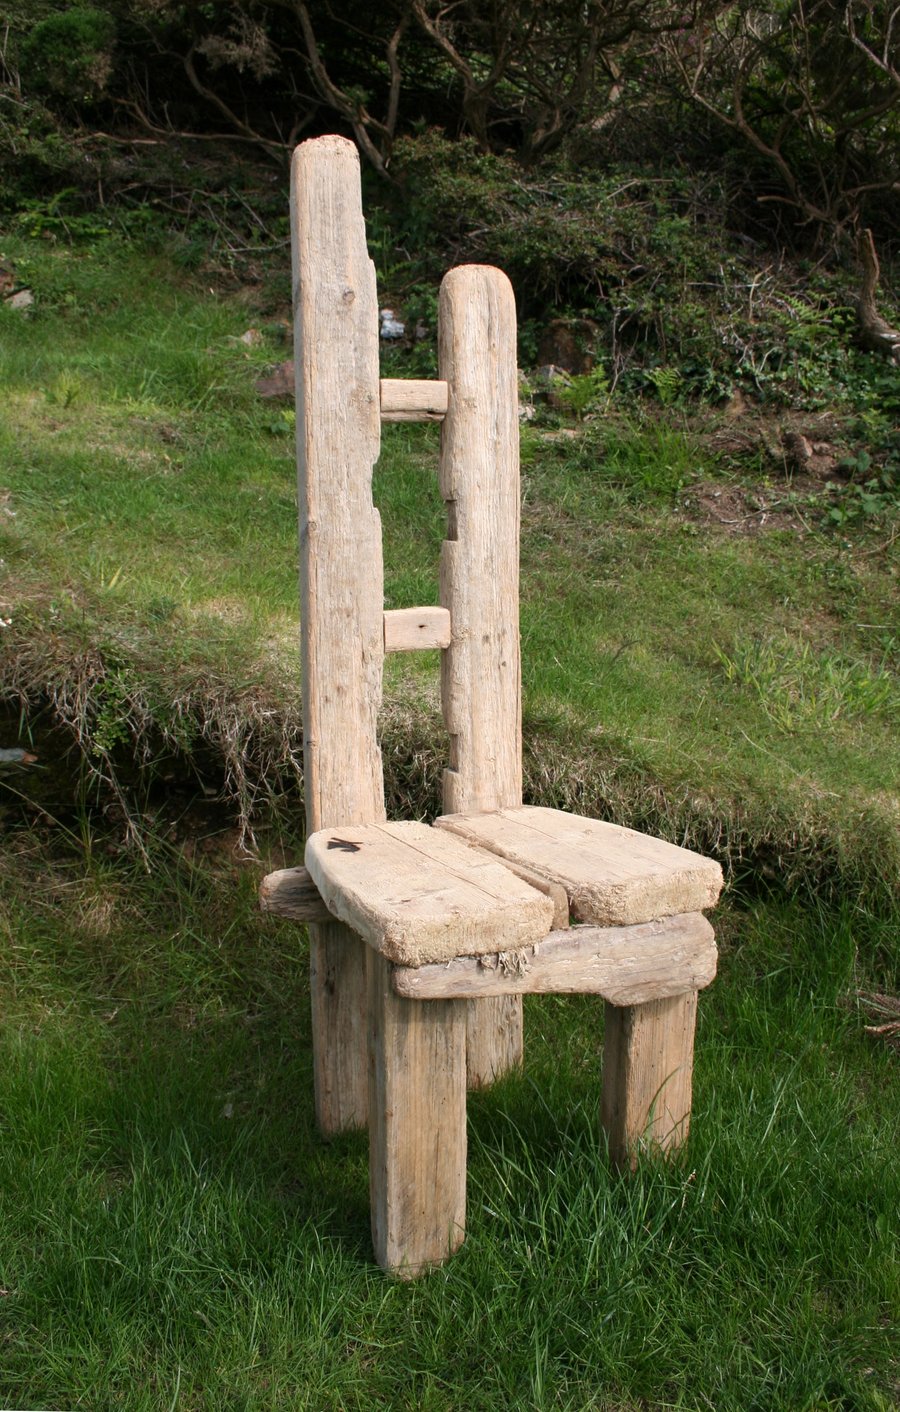 Diftwood Chair, Drift wood Garden Chair, Driftwood Garden seat, Coastal Garden